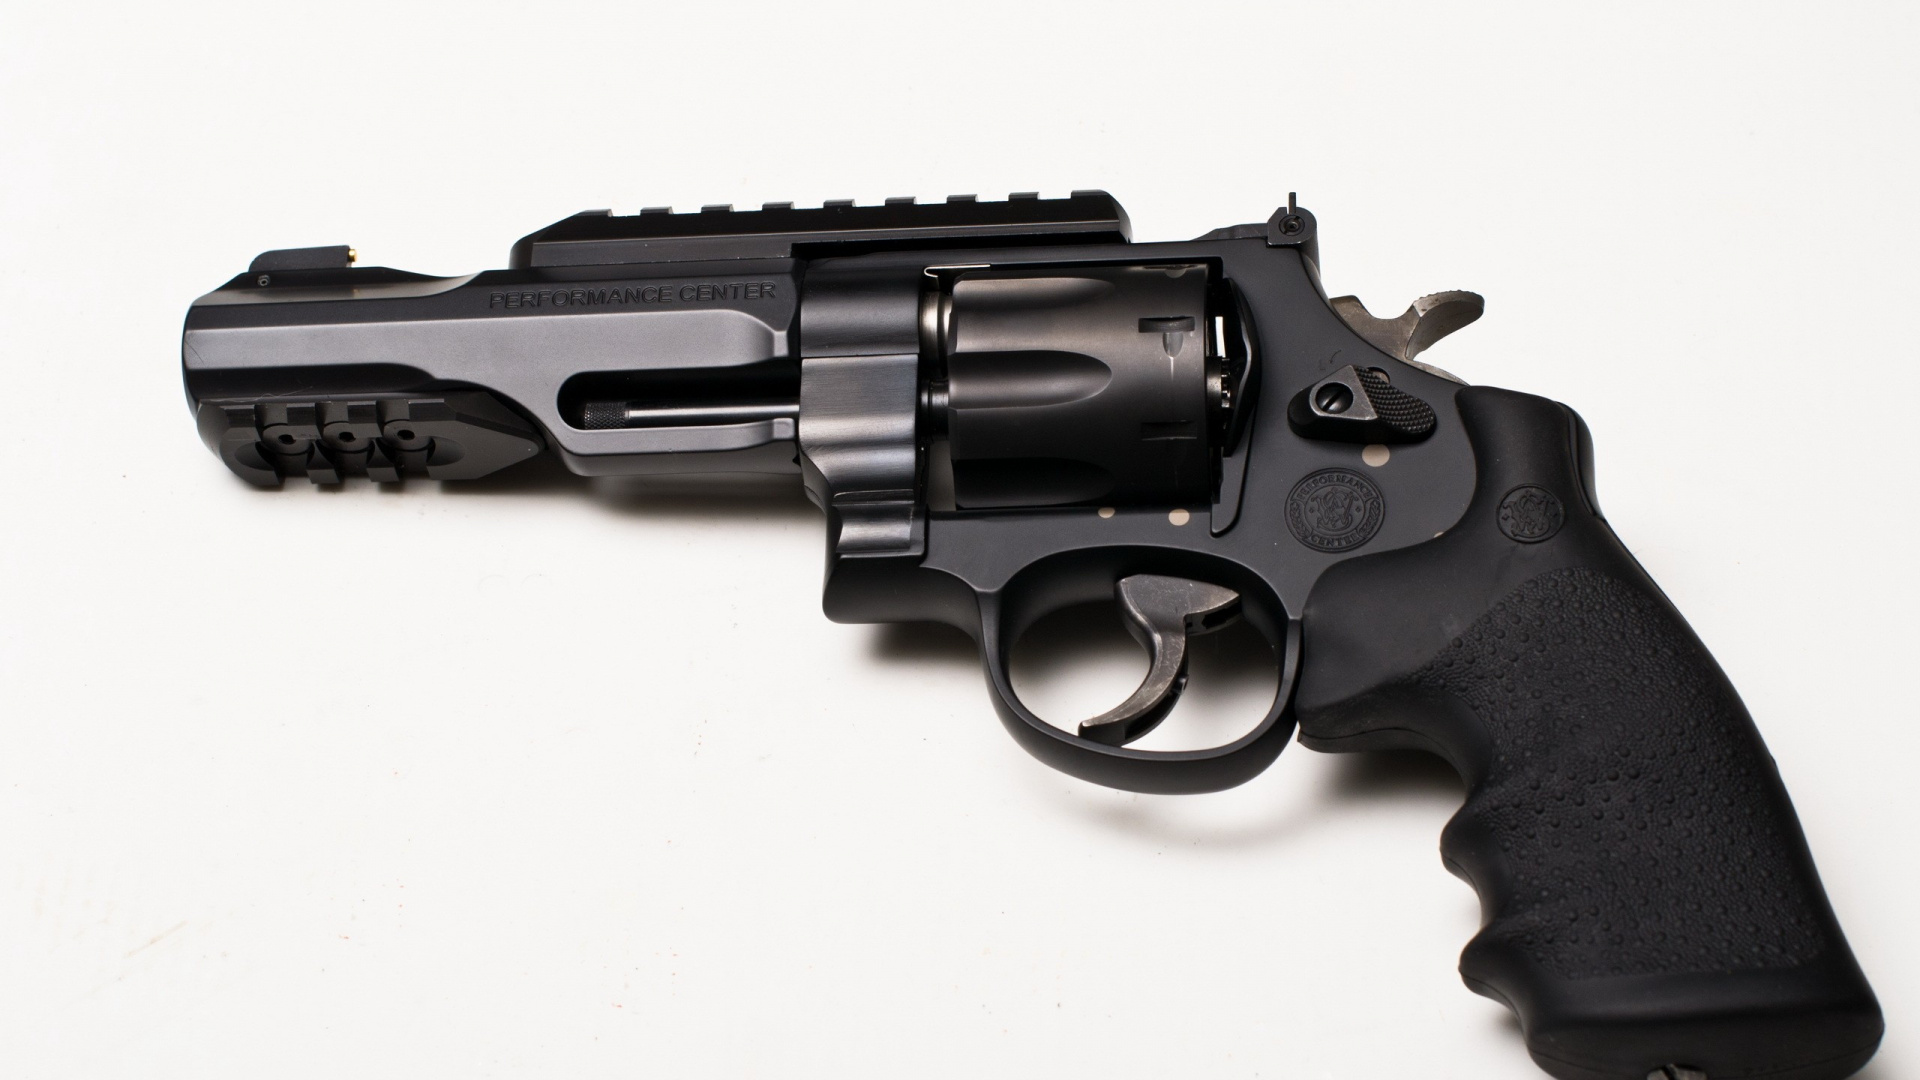 Handfeuerwaffe, Feuerwaffe, Revolver, Trigger, Gun Barrel. Wallpaper in 1920x1080 Resolution